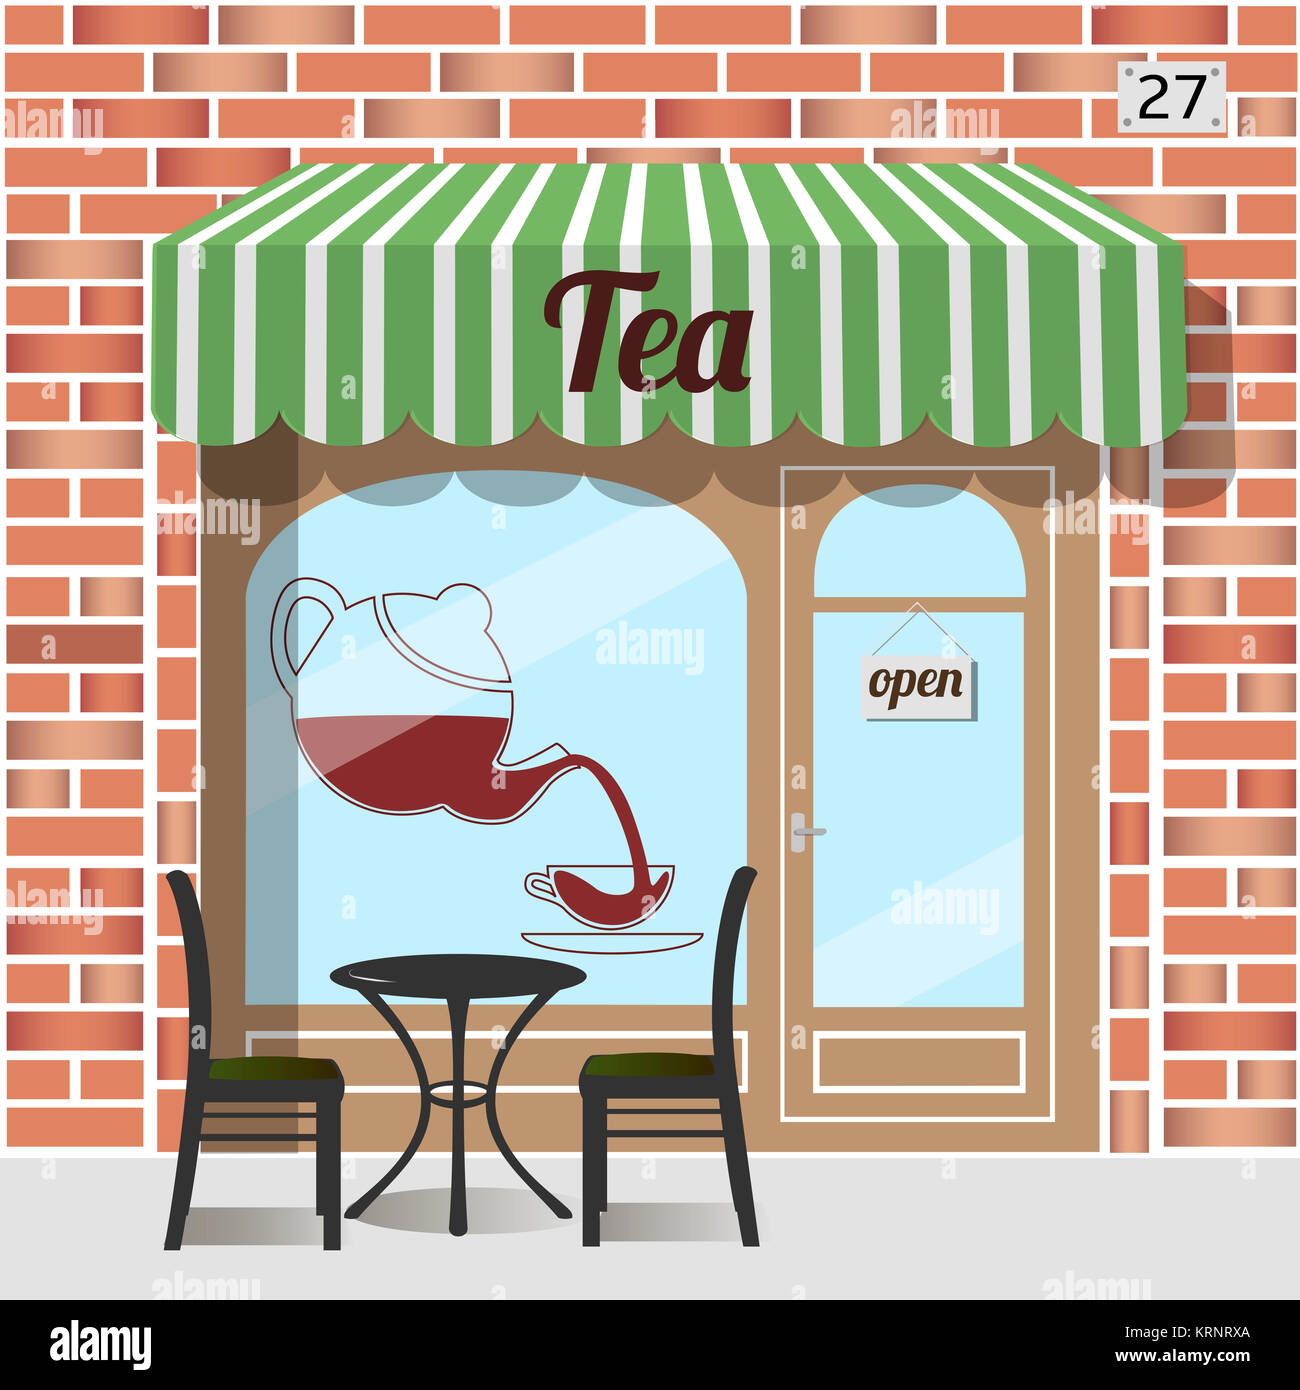 Tea shop facade Stock Photo - Alamy